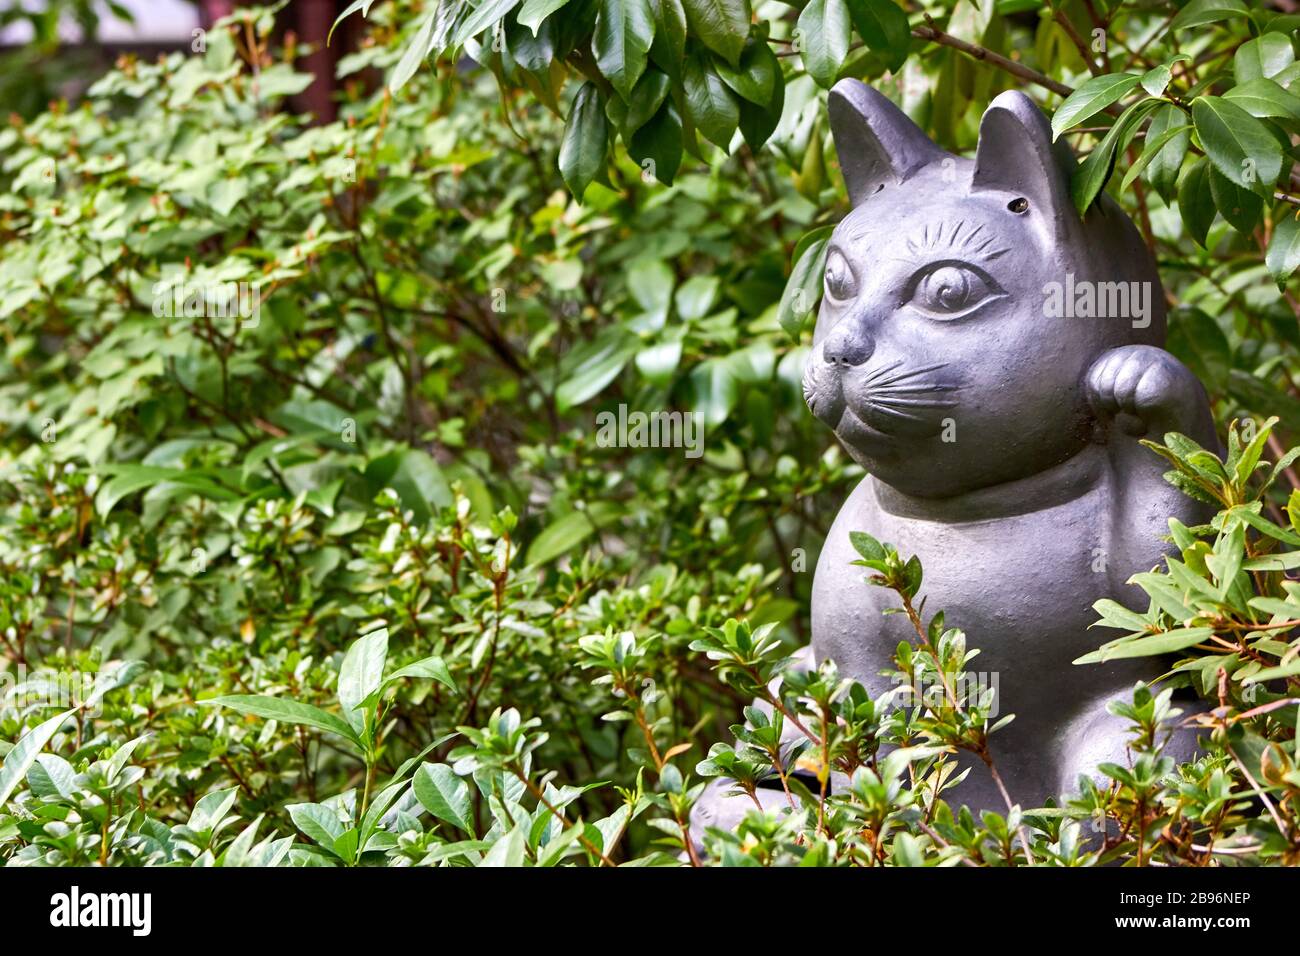 Welcoming cat sculpture in the garden Stock Photo